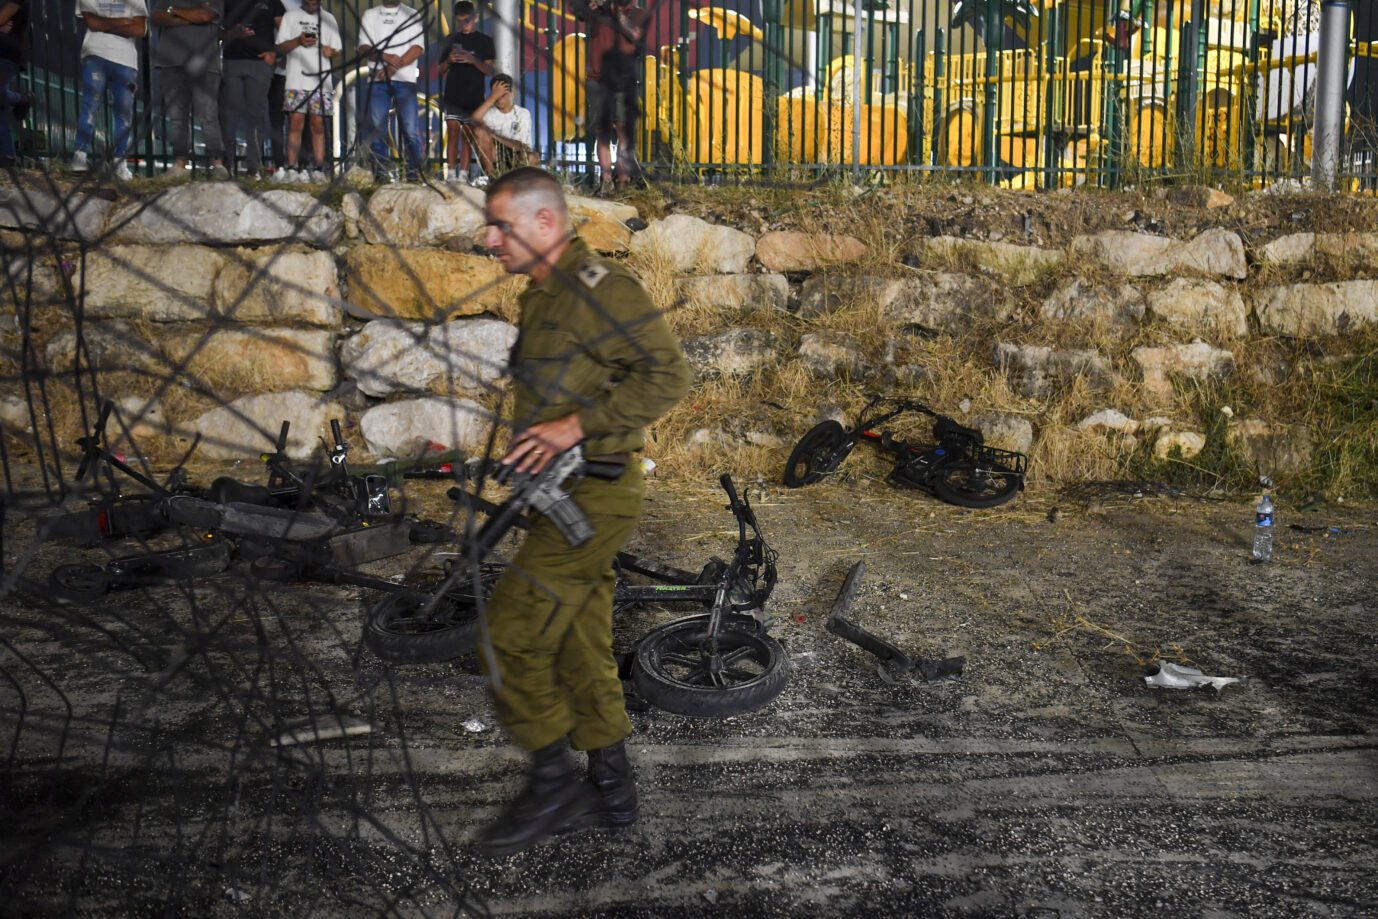 In Israel schlägt eine iranische Rakete auf einem Fußballplatz ein und tötet zwölf Kinder und Jugendliche. Gefeuert wurde sie von der Hisbollah-Miliz im Libanon. Reicht das für eine Kriegserklärung? Ein israelischer Militäroffizier geht an zerstörten Kinderfahrrädern am Ort eines Raketenangriffs in der drusischen Stadt Majdal Shams auf den israelisch kontrollierten Golanhöhen vorbei. Ein israelischer Soldat an dem Ort des Raketenangriffs: Wird Israel in den Libanon einmaschieren, um die Hisbollah-Miliz auszuschalten? Foto: picture alliance / ASSOCIATED PRESS | Gil Eliyahu